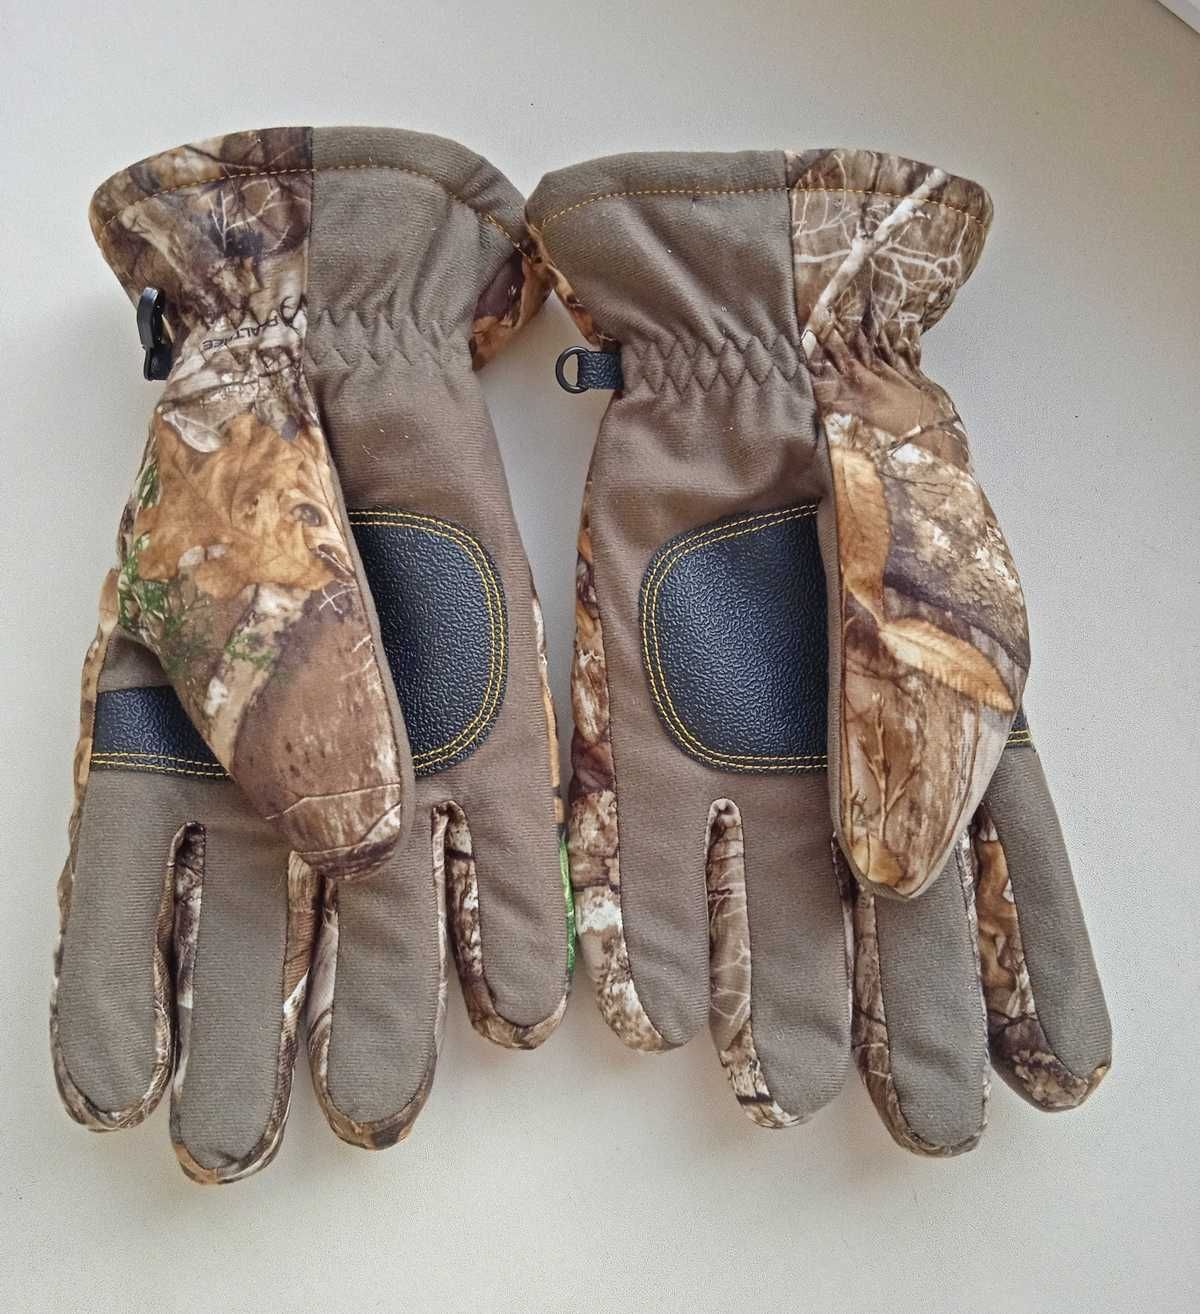 Зимові мисливські рукавички, охотничьи перчатки Hot Shot. З США